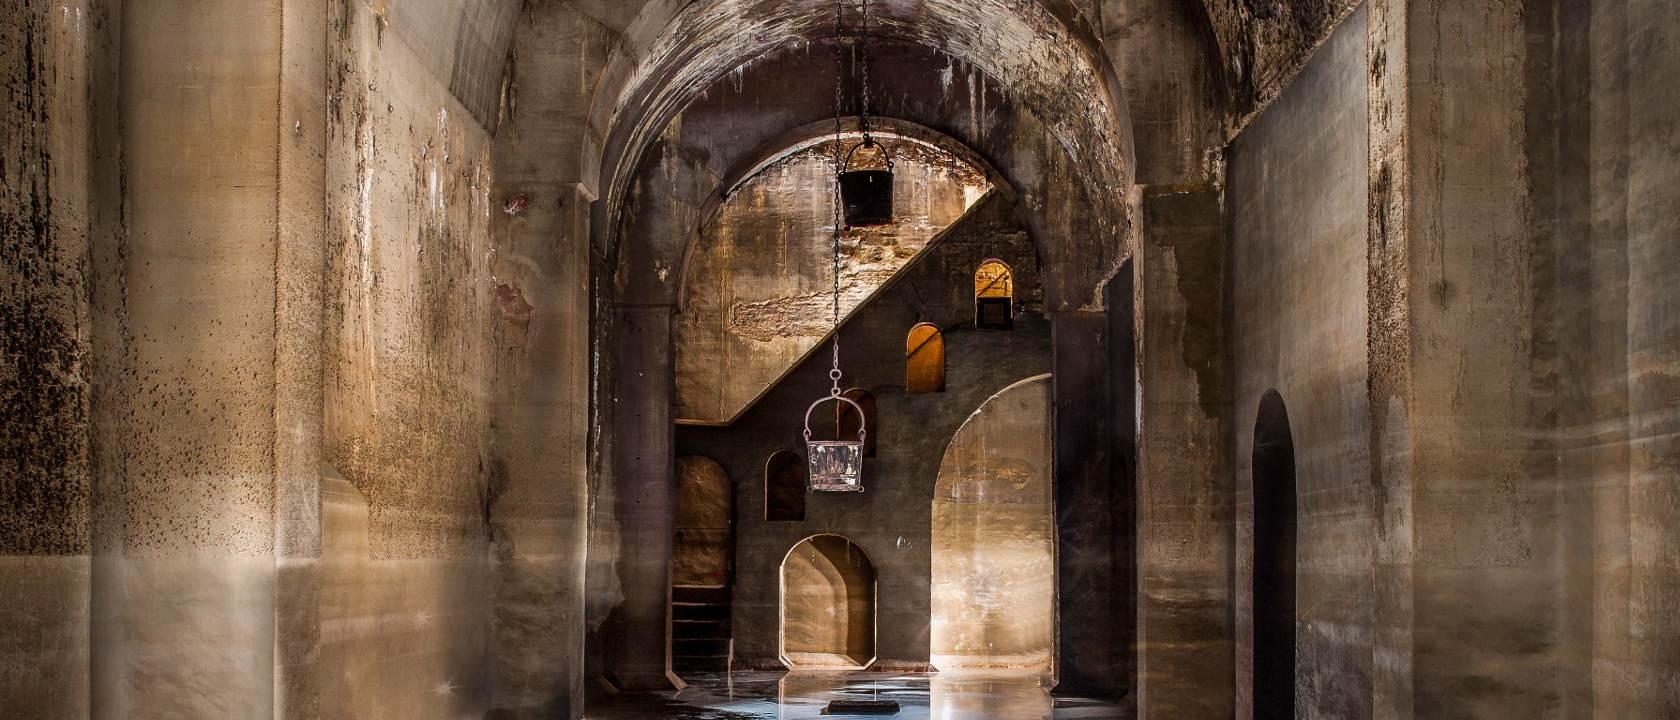 Los secretos de la Alhambra de Granada | Así son las mazmorras, aljibes y pasadizos secretos bajo el monumento  